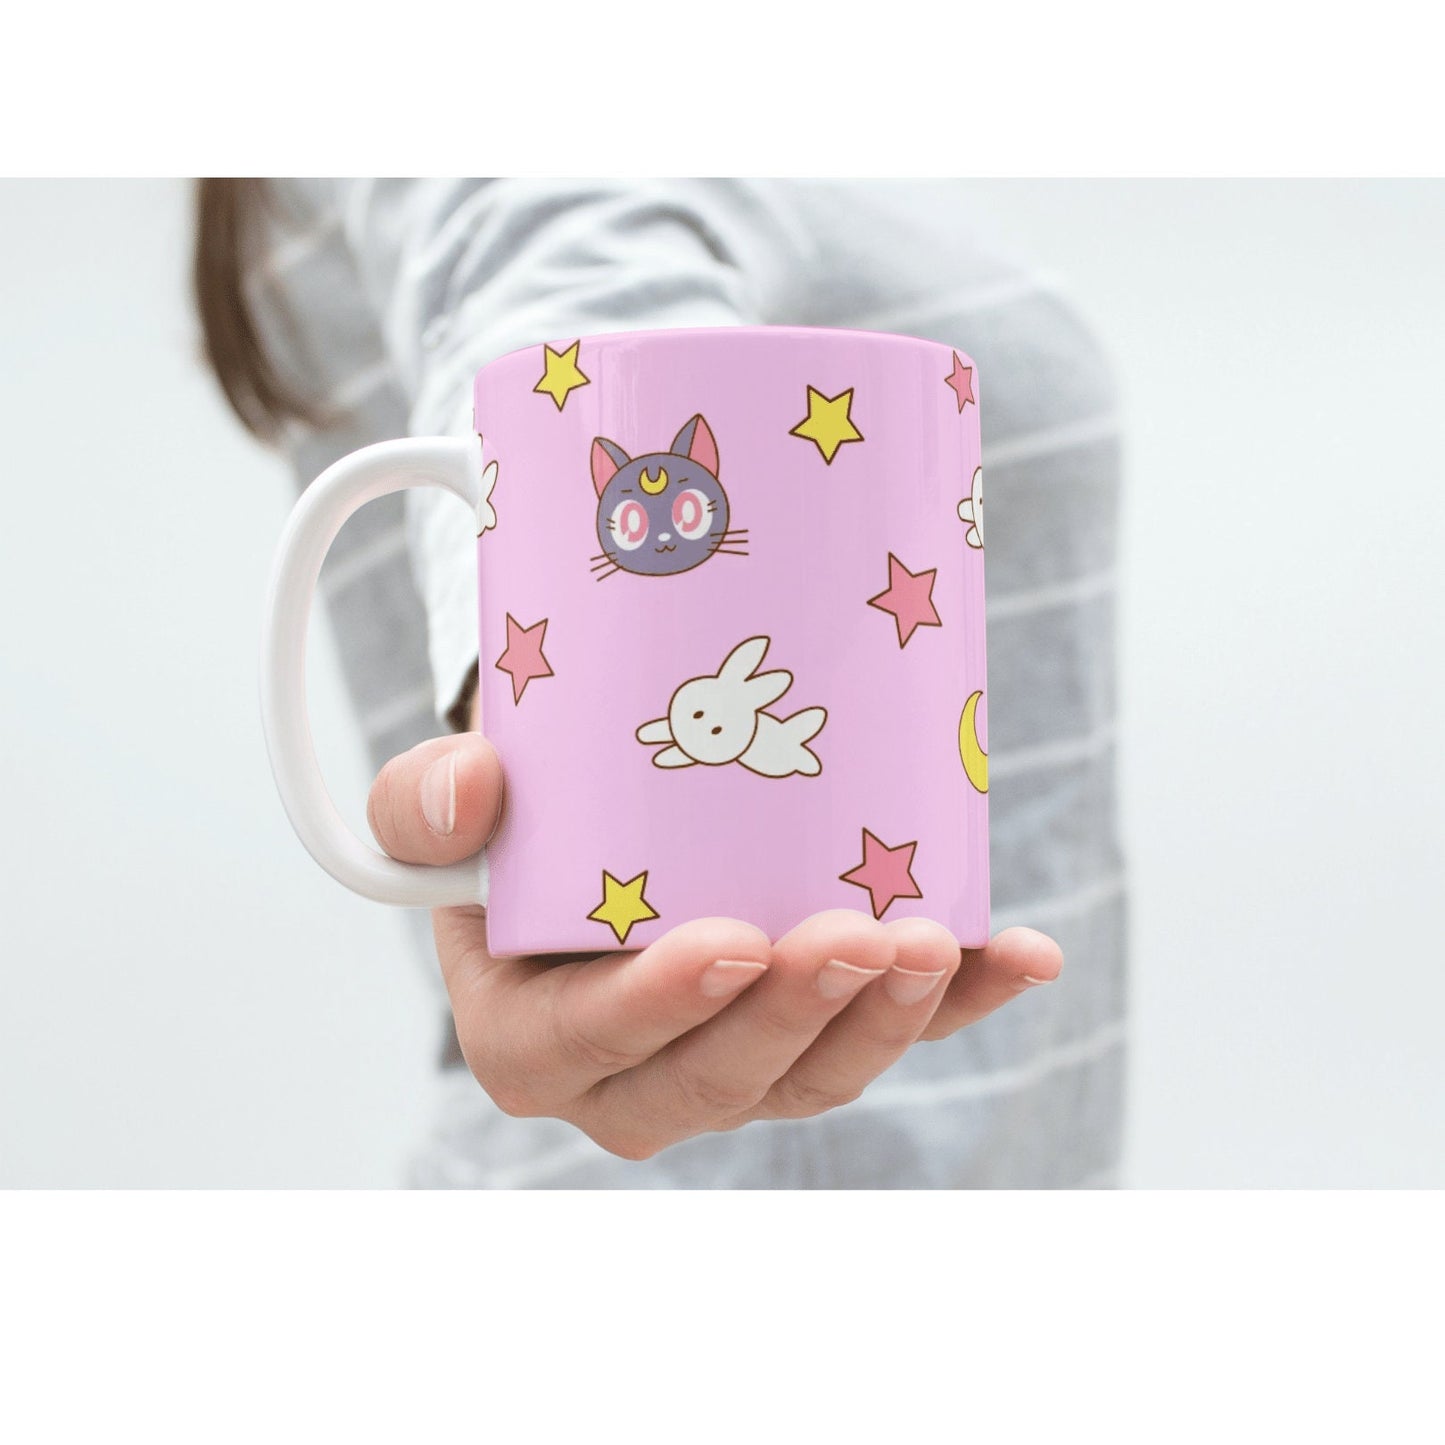 Magical Girl Moon Bunny Mug, Magical Girl Accessories, Cute Anime Gift for Her, Kawaii Coffee Mug